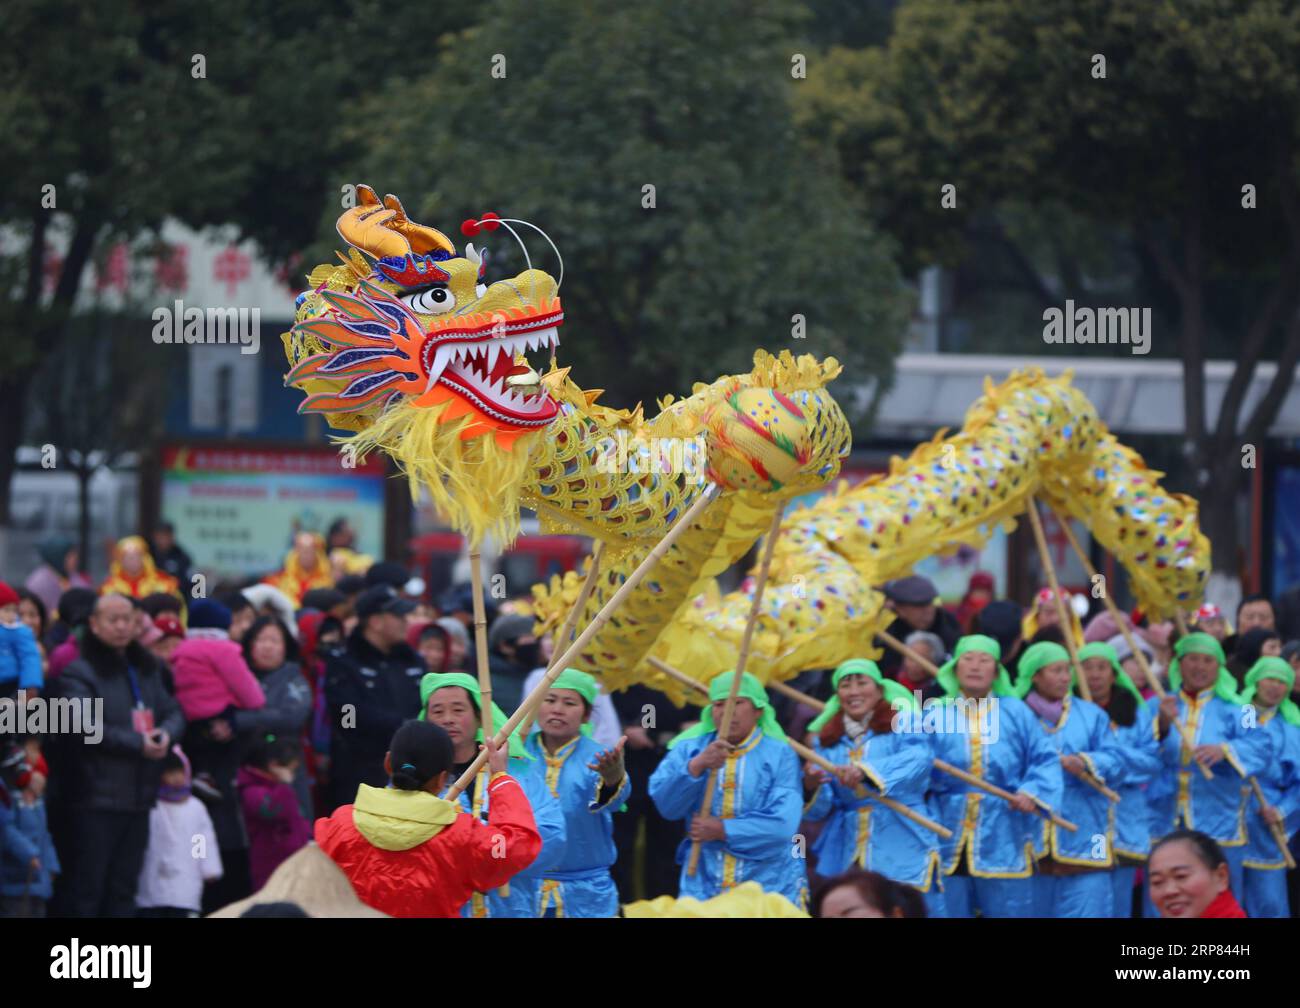 (190217) -- XIANGYANG, 17 février 2019 (Xinhua) -- des artistes folkloriques exécutent une danse du dragon pour célébrer le prochain Festival des lanternes, qui aura lieu le 19 février cette année, dans la ville de Xiangyang, dans la province du Hubei, au centre de la Chine, le 17 février 2019. (Xinhua/Li Xuhui) CHINA-LANTERN FESTIVAL-CELEBRATION (CN) PUBLICATIONxNOTxINxCHN Banque D'Images